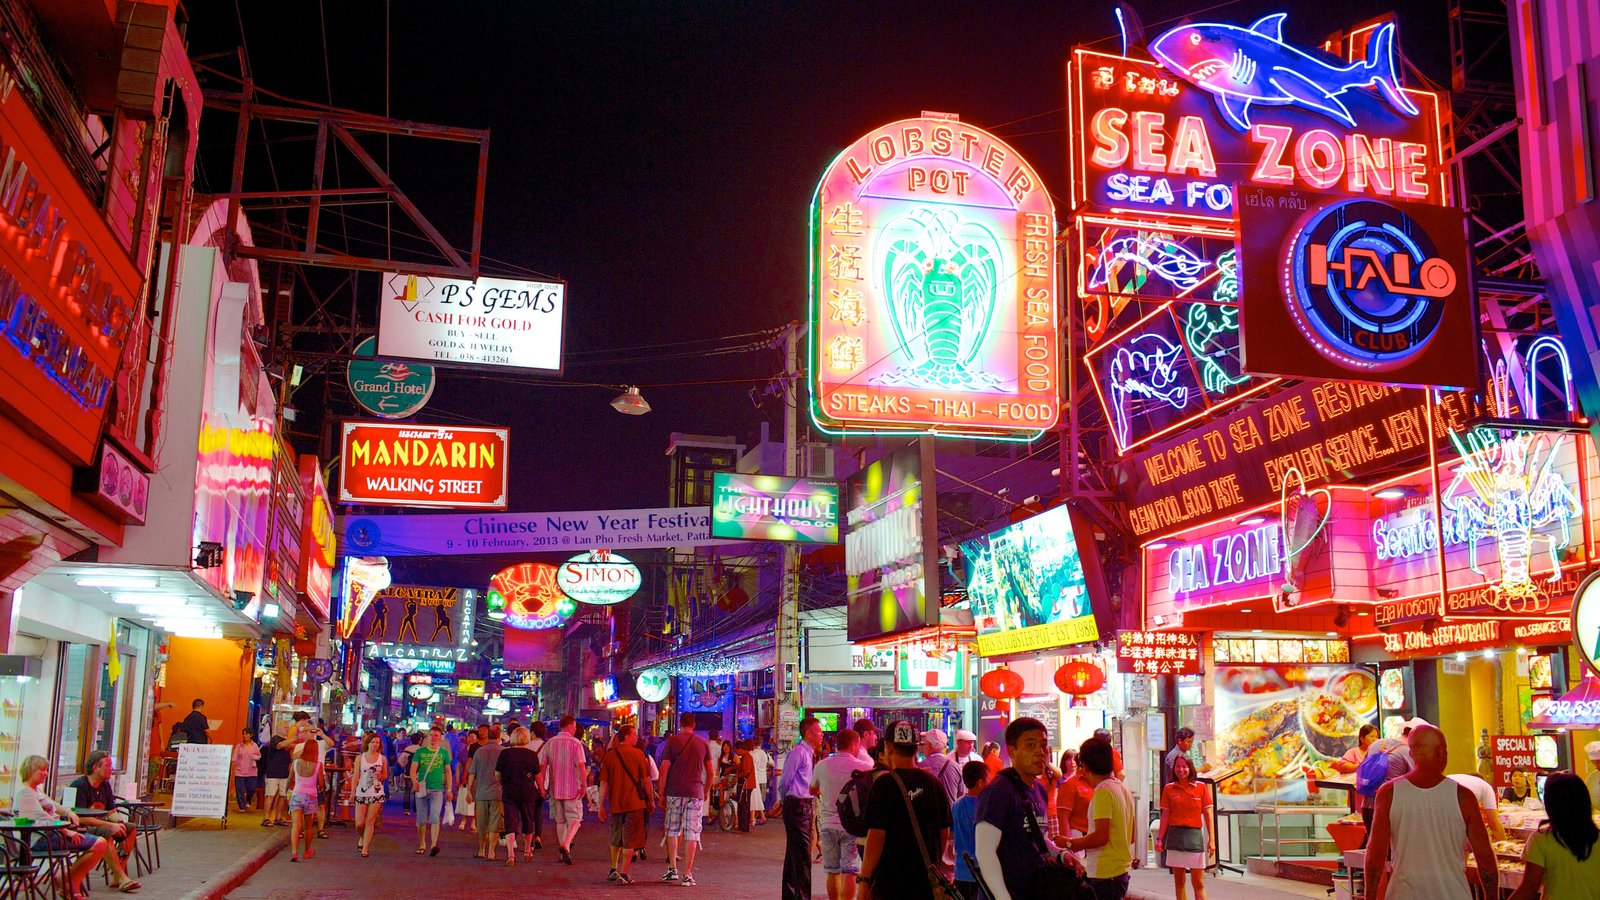 Kinh nghiệm du lịch Pattaya